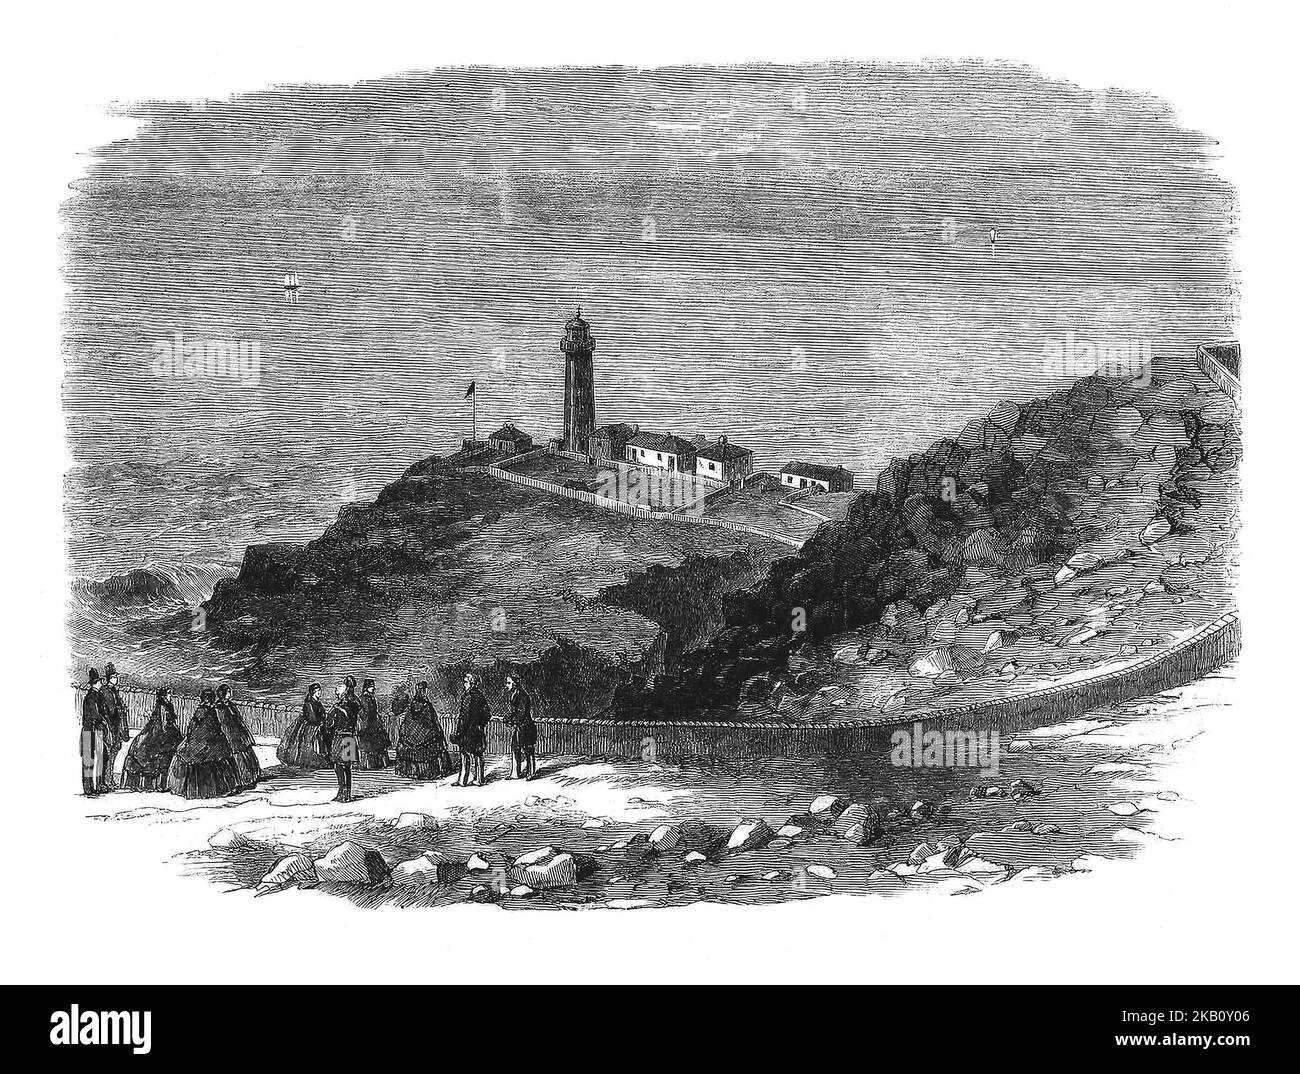 Une visite de la reine Victoria et de son mari Prince Albert au phare de South Stack à Anglesea, dans le nord du pays de Galles, guidant des navires traversant la mer d'Irlande vers et depuis les ports de Holyhead et Dun Laoghaire. Il a suivi le troisième voyage du monarque en Irlande en 1861 dans le yacht royal britannique. Banque D'Images